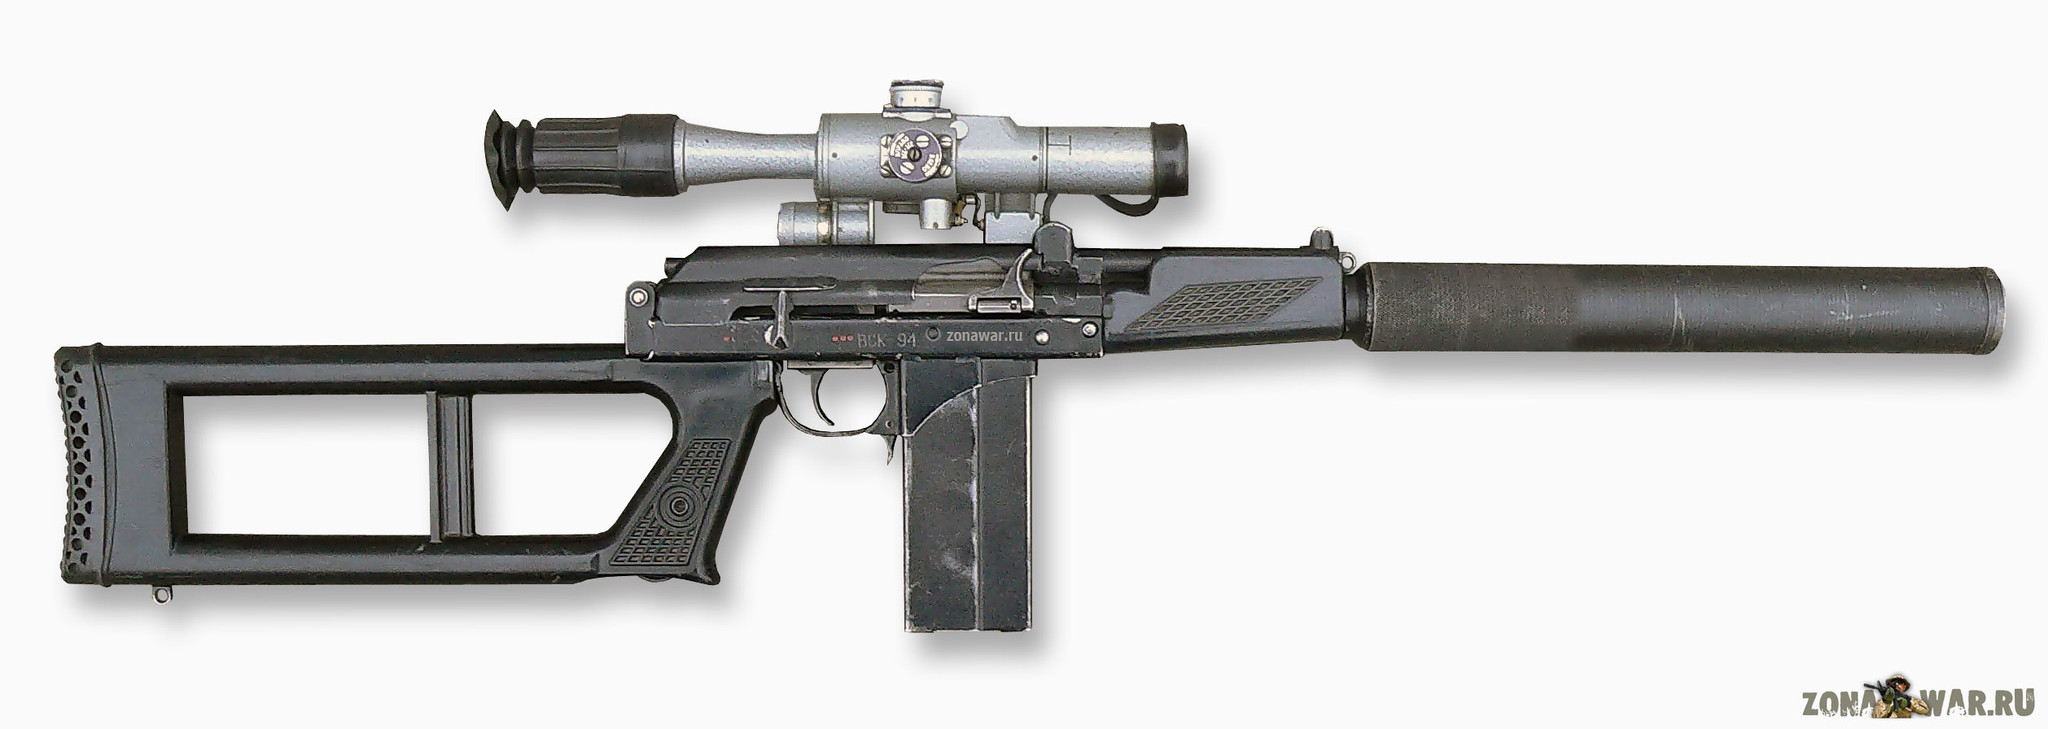 VSK-94 sniper rifle